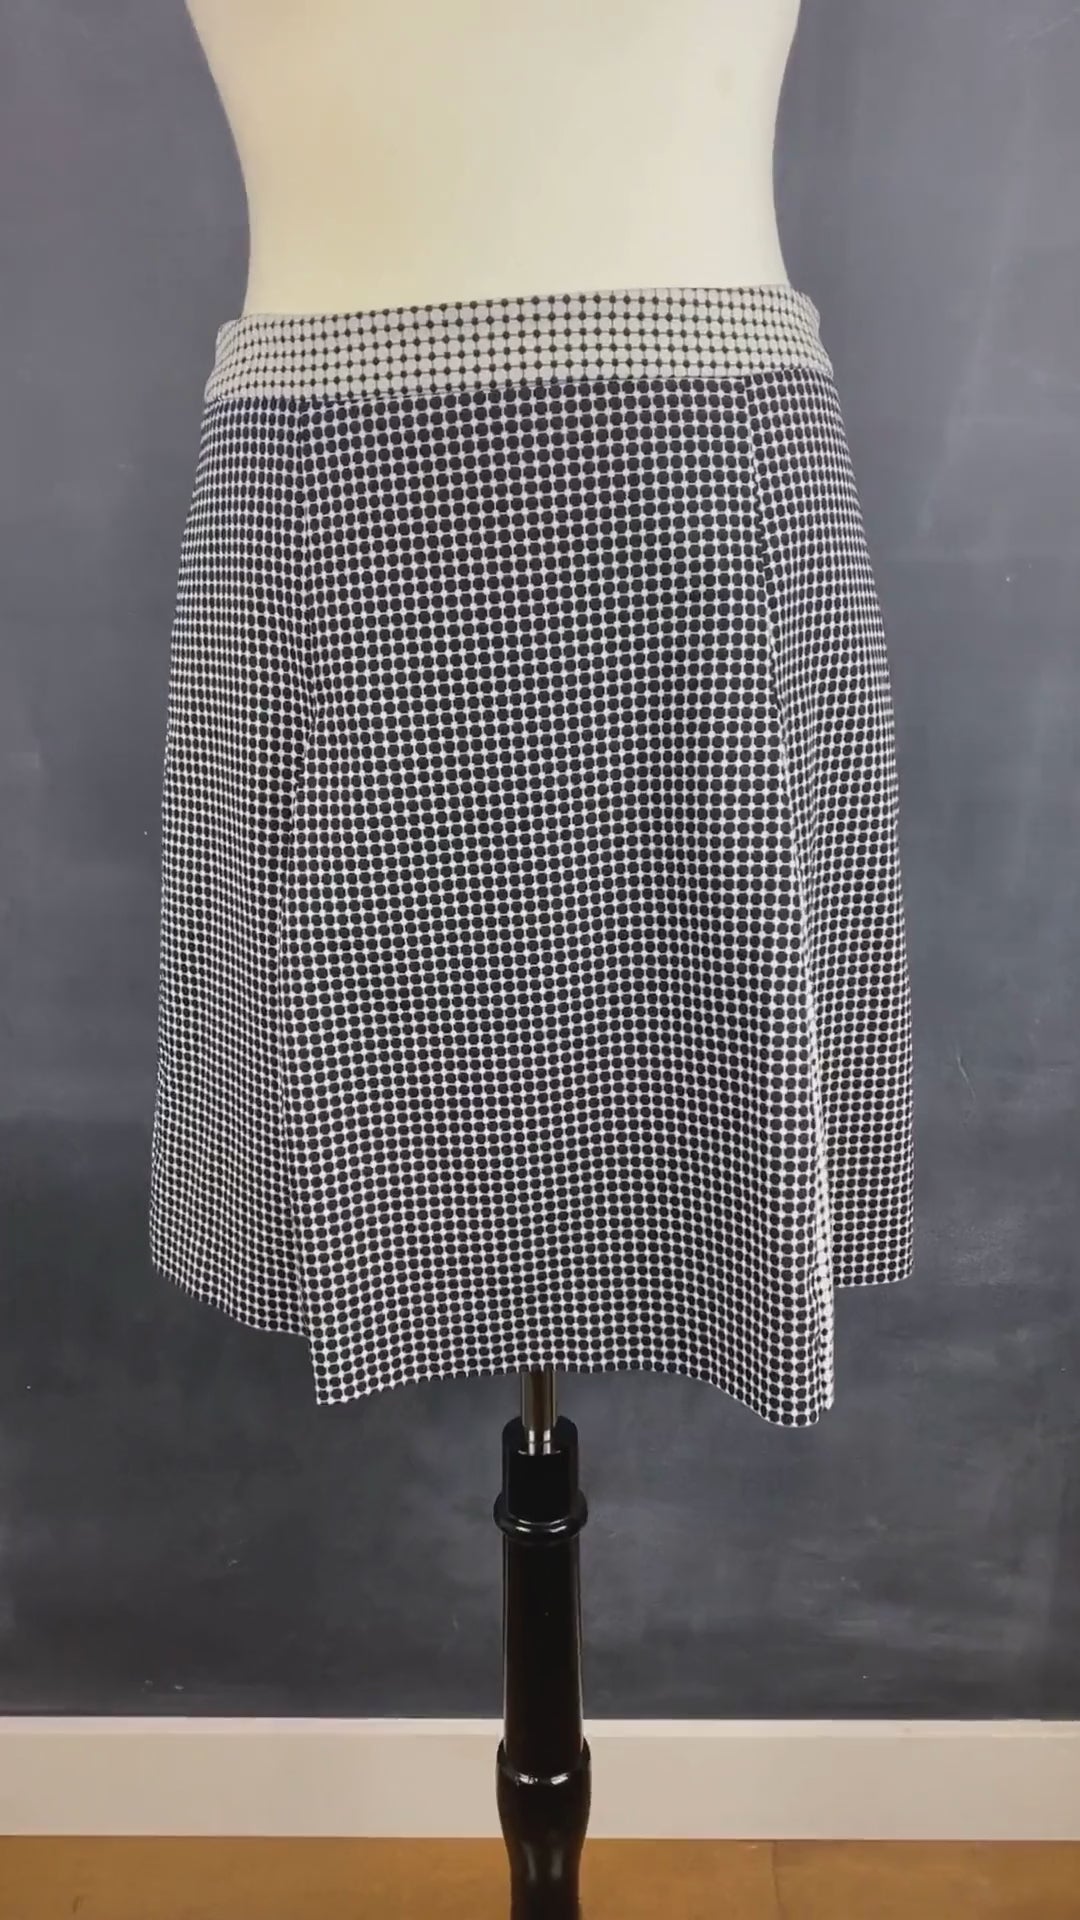 Jupe à plis creux effet optique crème et noir Tristan, taille 8. Vue de la vidéo qui présente tous les détails de la jupe.